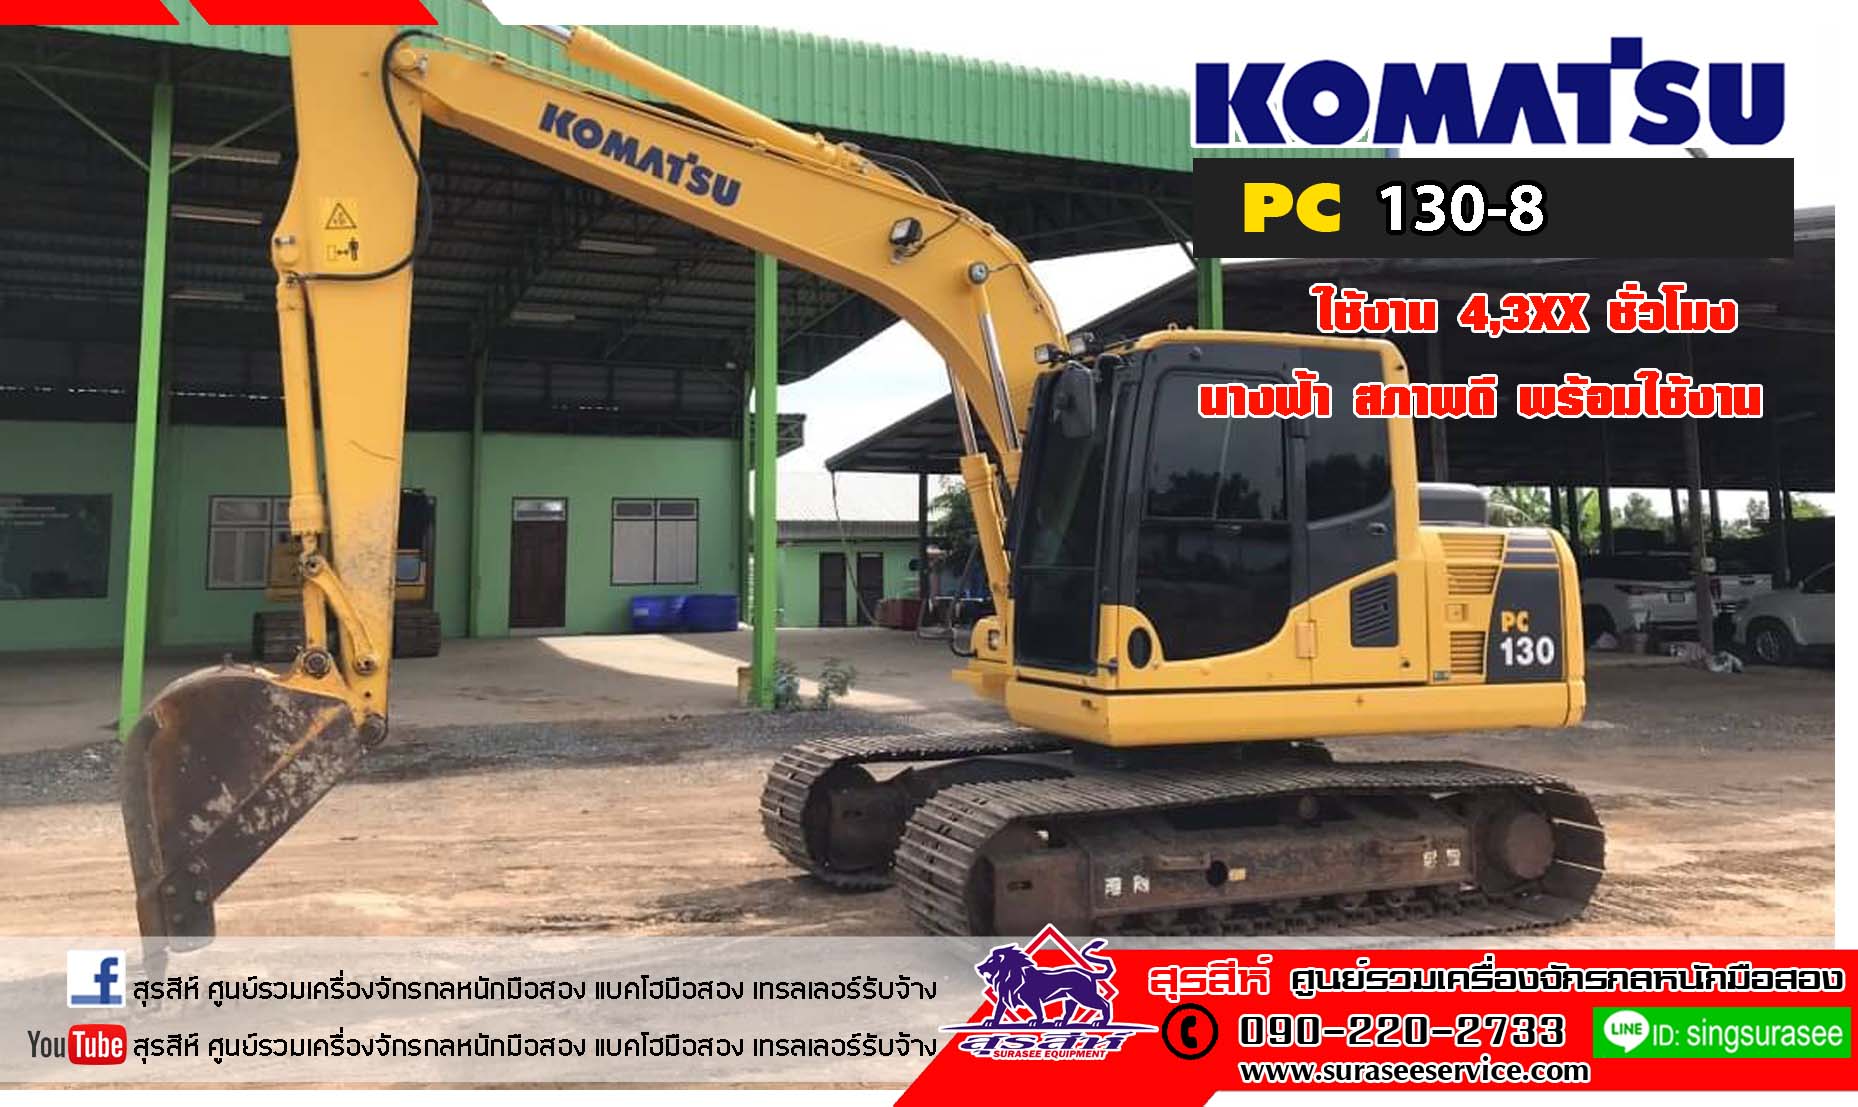 ขาย KOMATSU PC130-8 ใช้งาน 4,5xx ชม. (PM 7,000) เอกสารชุดแจ้งจำหน่าย สภาพนางฟ้า